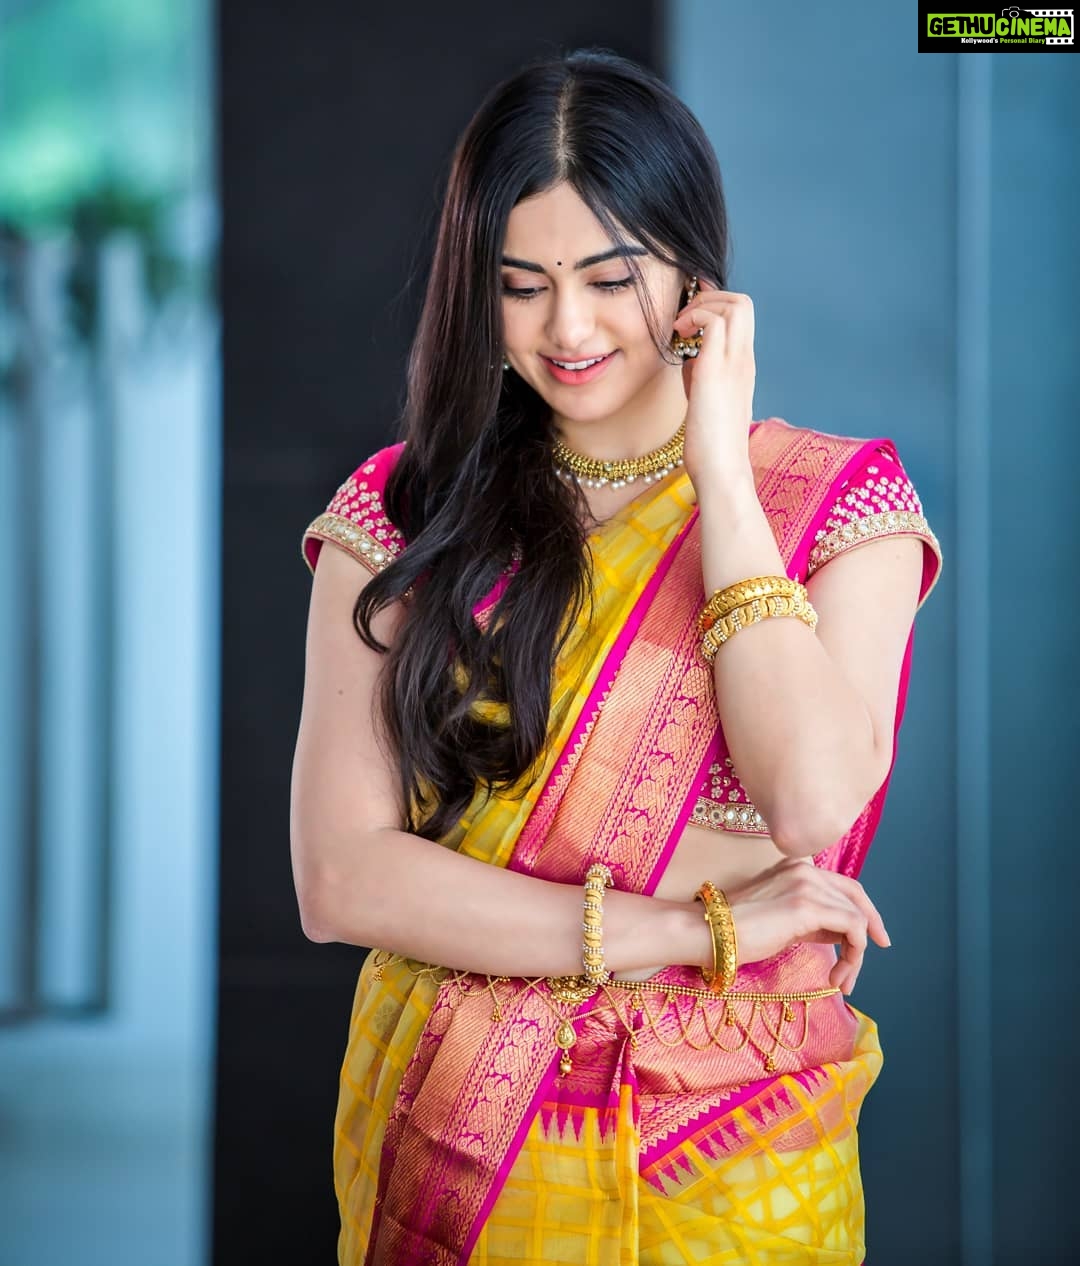 Actress Adah Sharma Instagram Photos and Posts May 2019 - Gethu Cinema